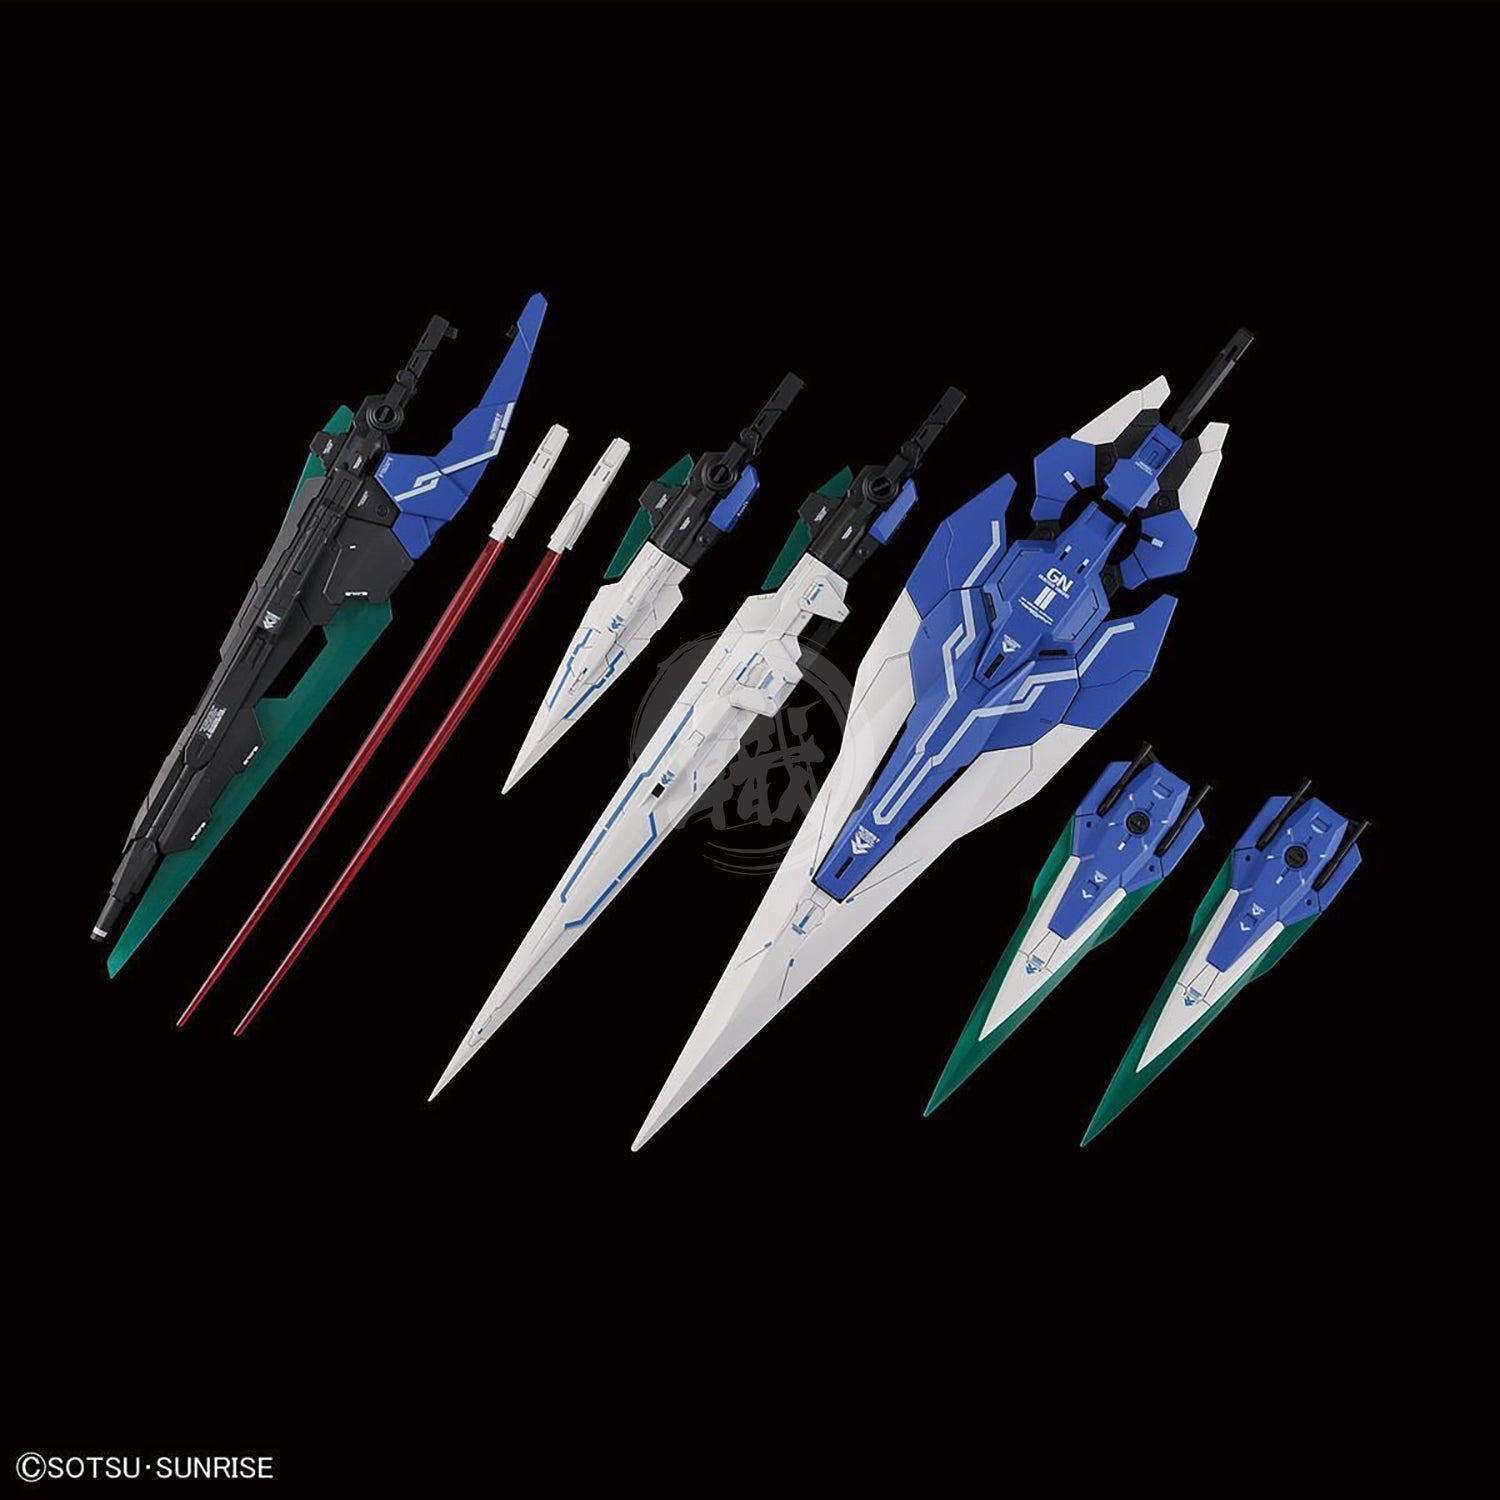 Bandai - PG OO Gundam Seven Sword/G - ShokuninGunpla